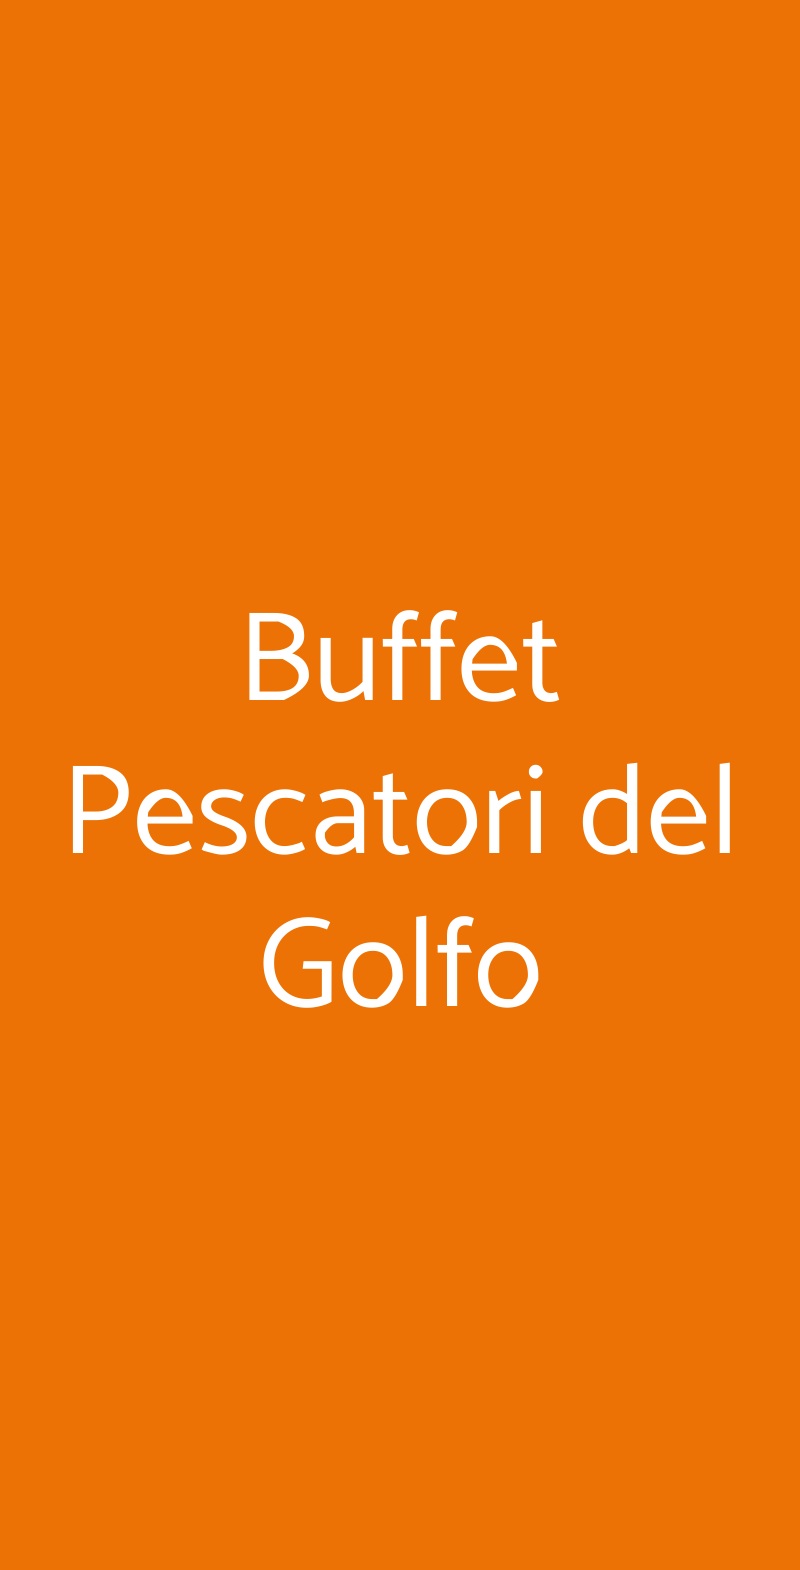 Buffet Pescatori del Golfo Trieste menù 1 pagina